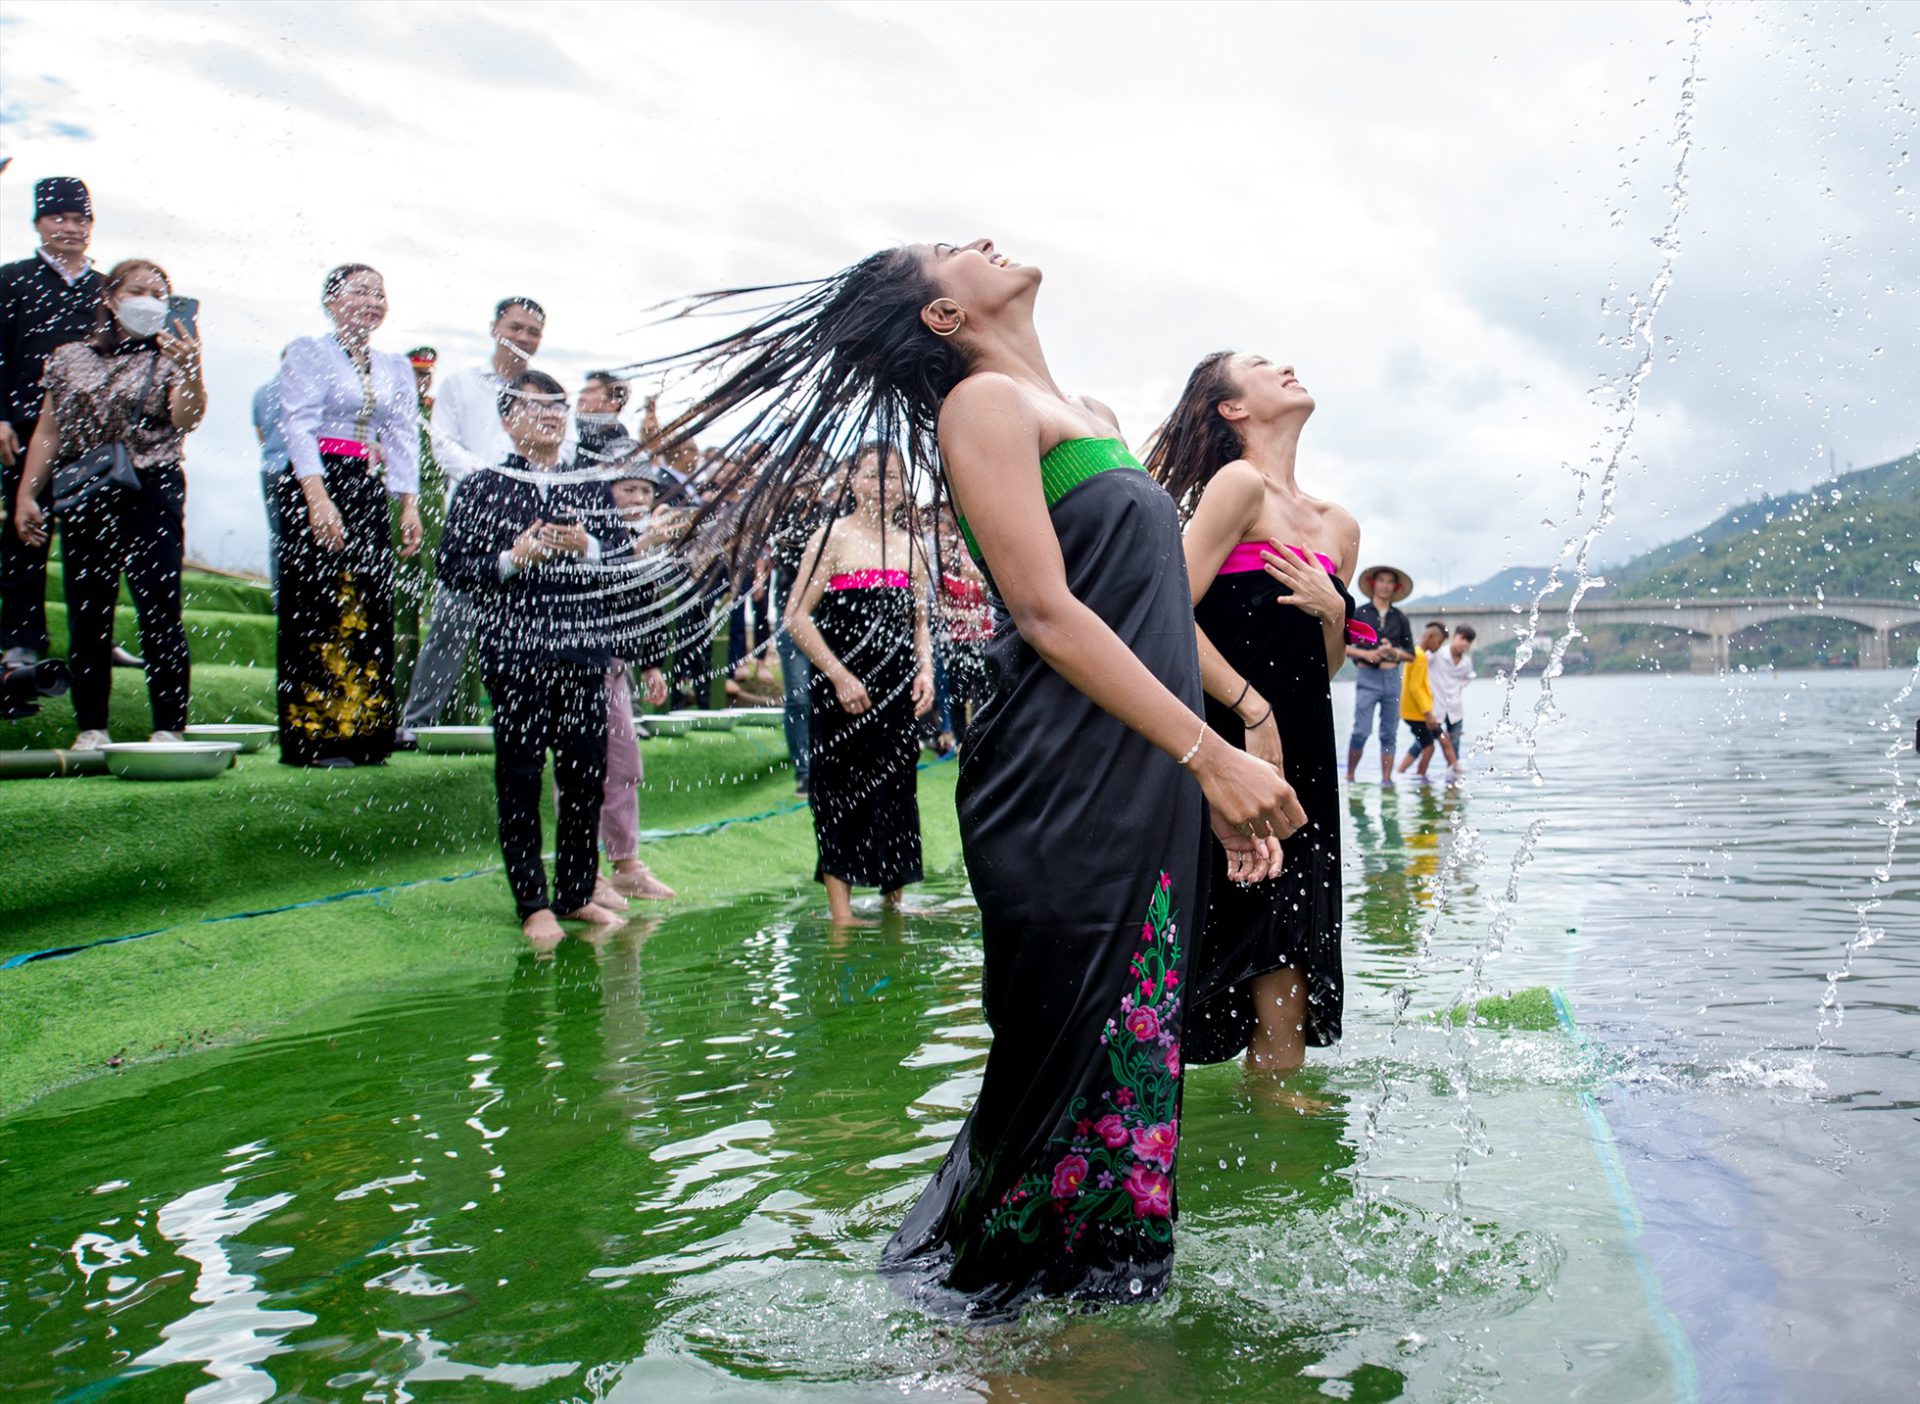 Ngày 25/11, các thí sinh có mặt tại huyện Quỳnh Nhai tham gia trình diễn, trải nghiệm Lễ hội gội đầu của người Thái trắng ở bến thuyền Khu du lịch sinh thái Pauon Ecolakes.